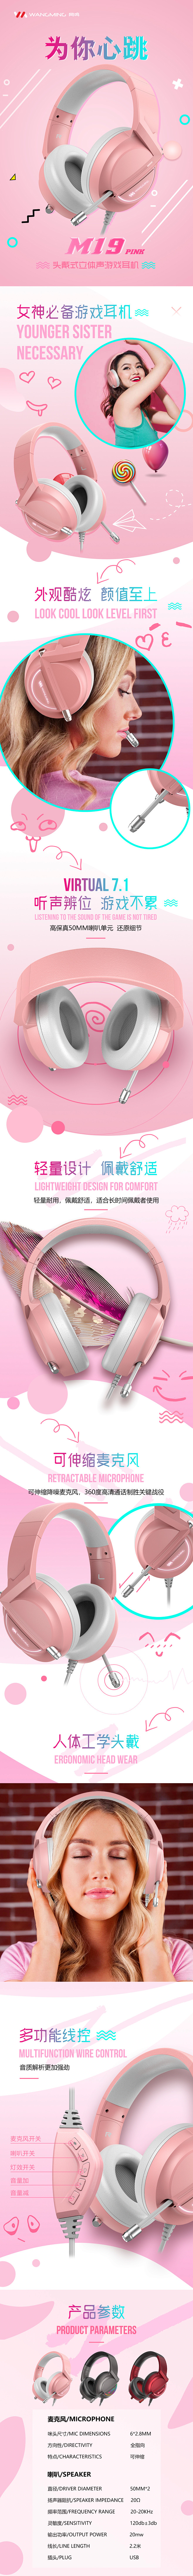 网鸣头戴式游戏耳机M19粉色详情页